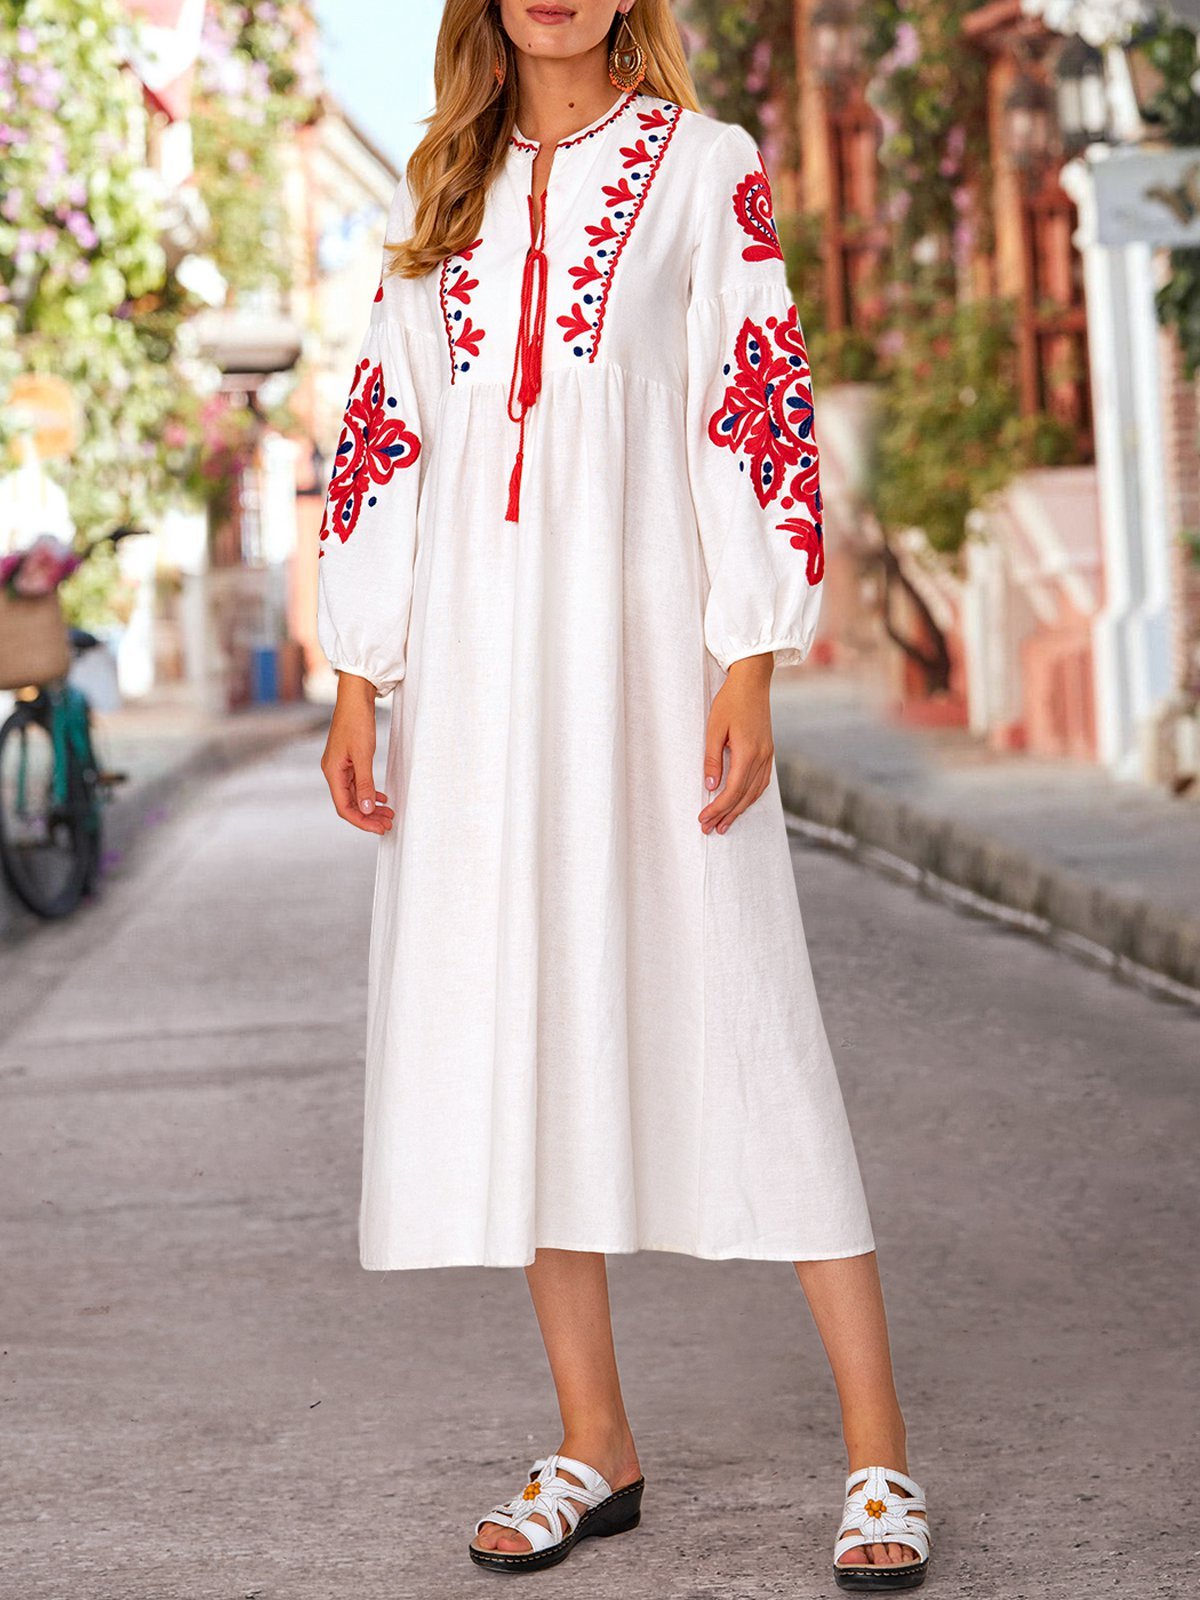 Roselinlin Floral Dresses Long Sleeve Vintage Dresses Holiday A-Line Ethnic Floral-Embroidered Dresses